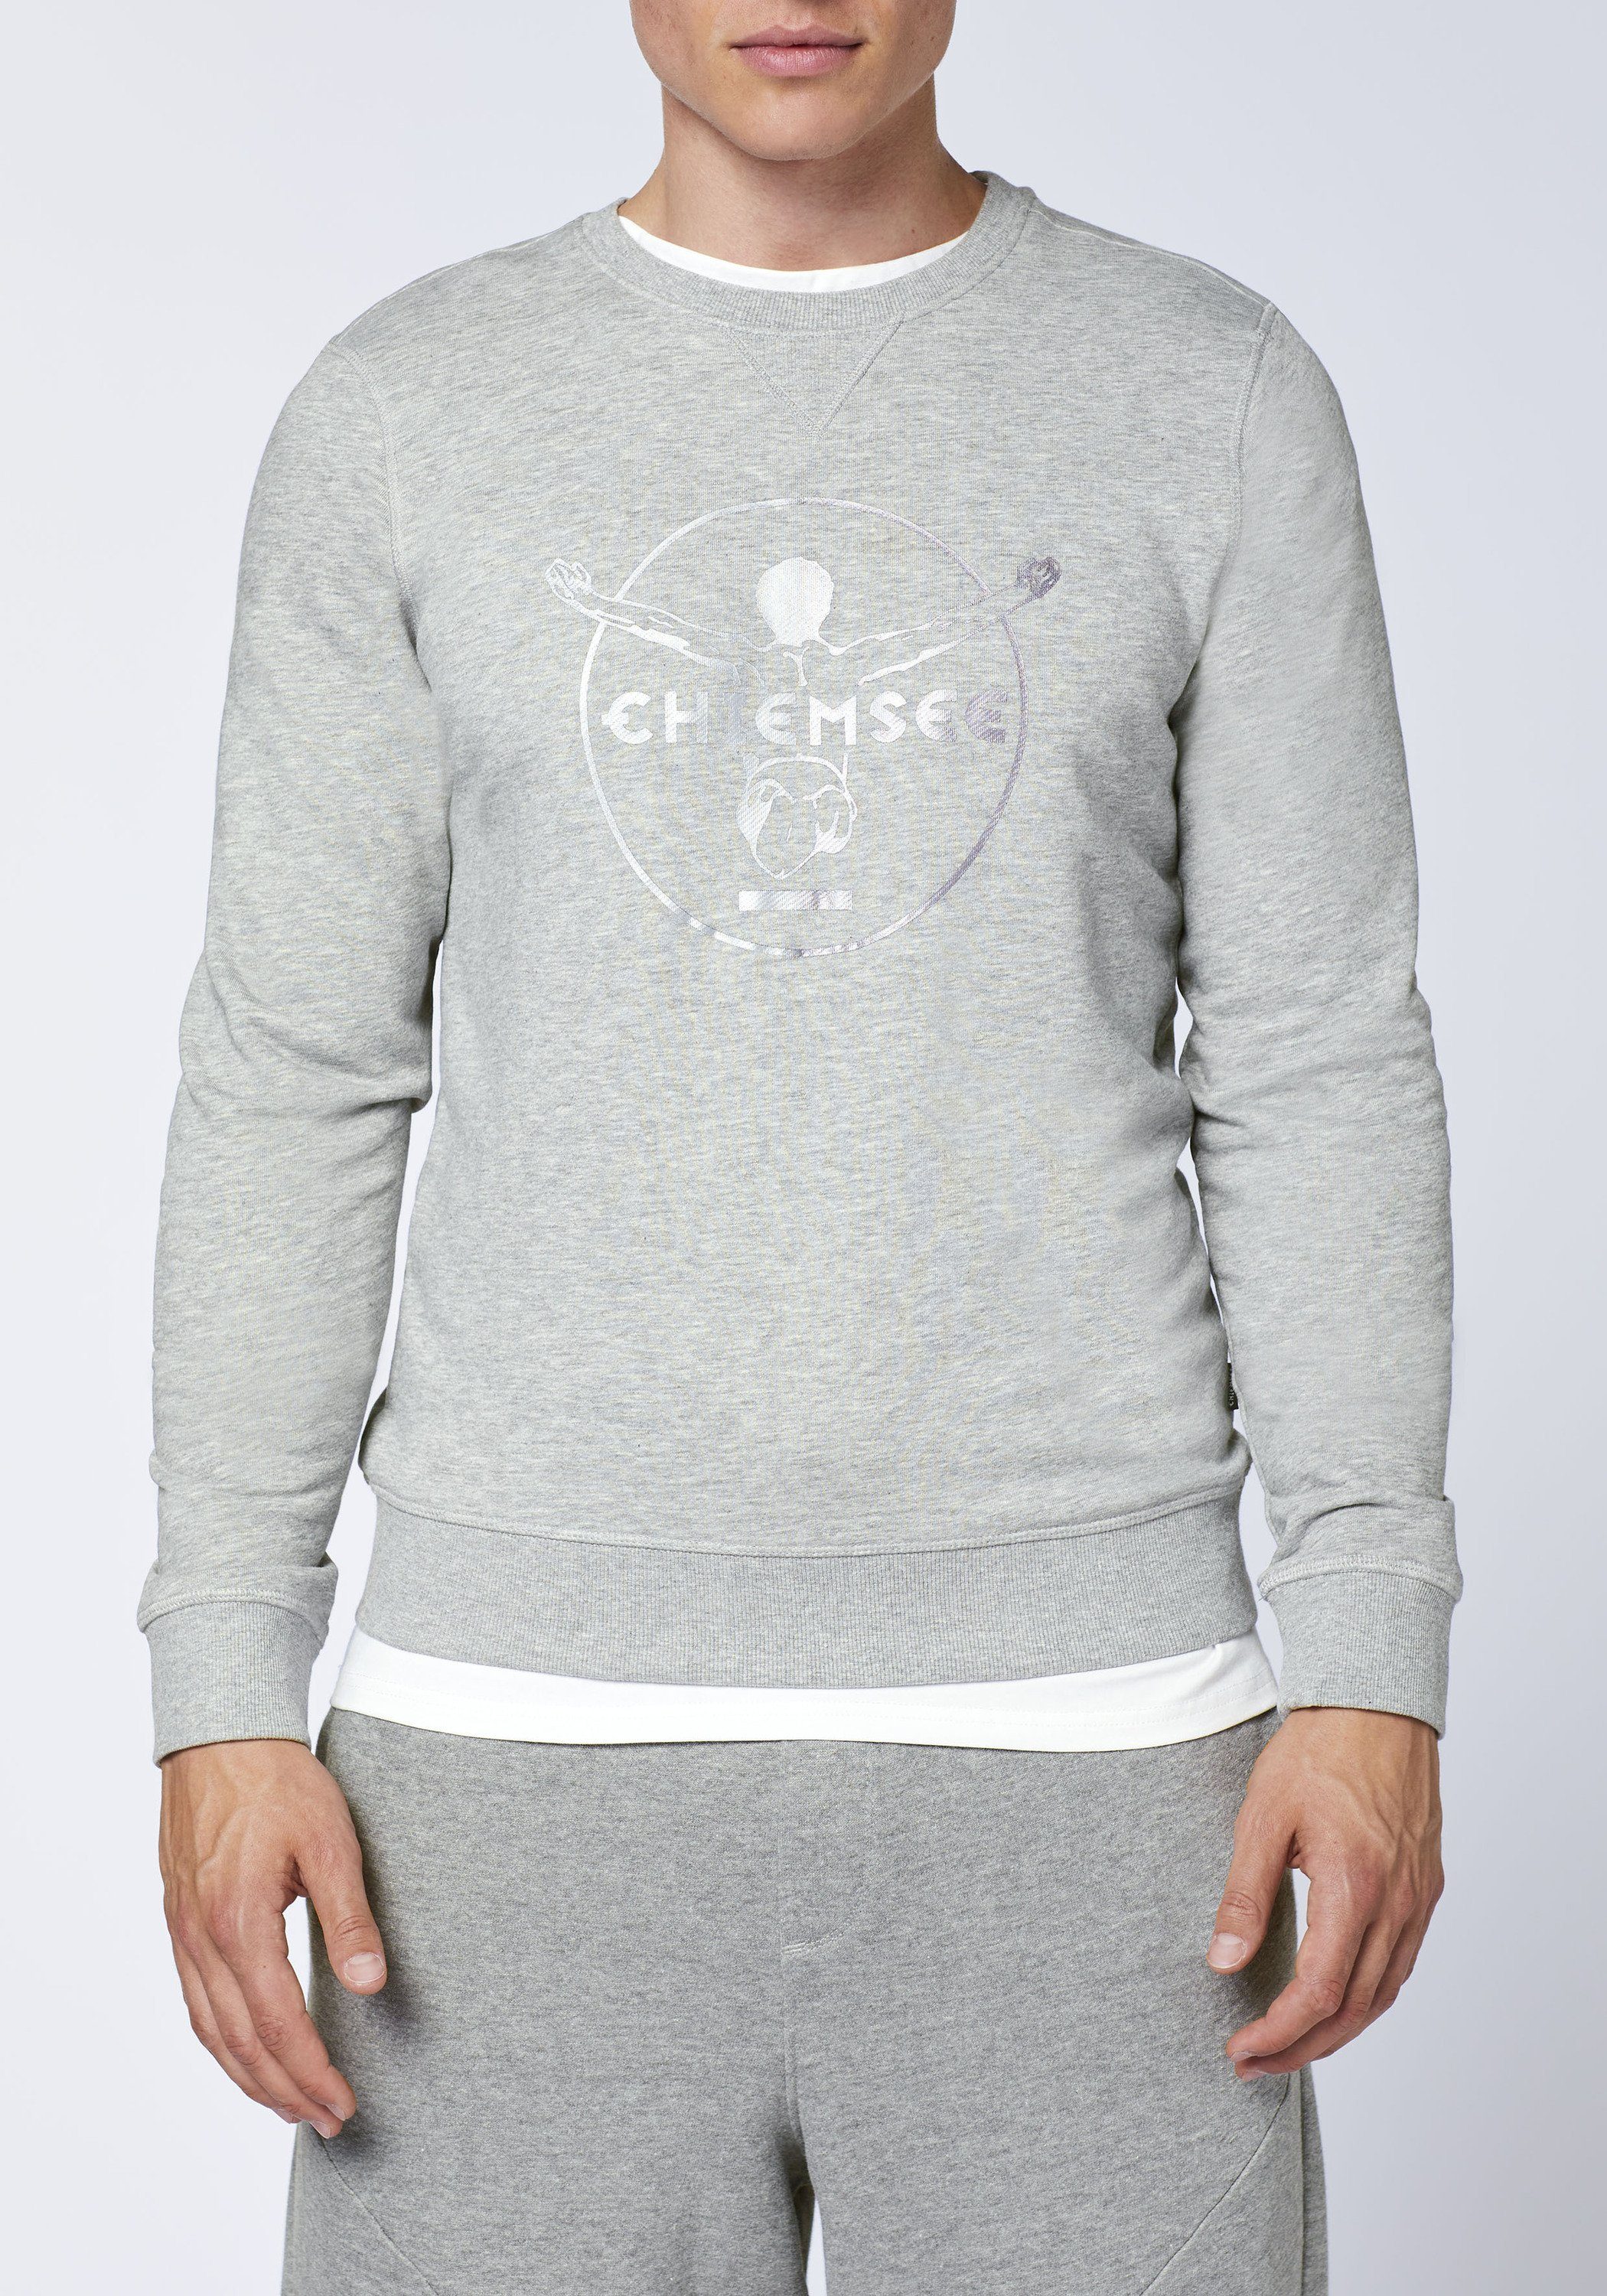 mittel blau Sweater Label-Look im grau/hell 1 Sweatshirt Chiemsee